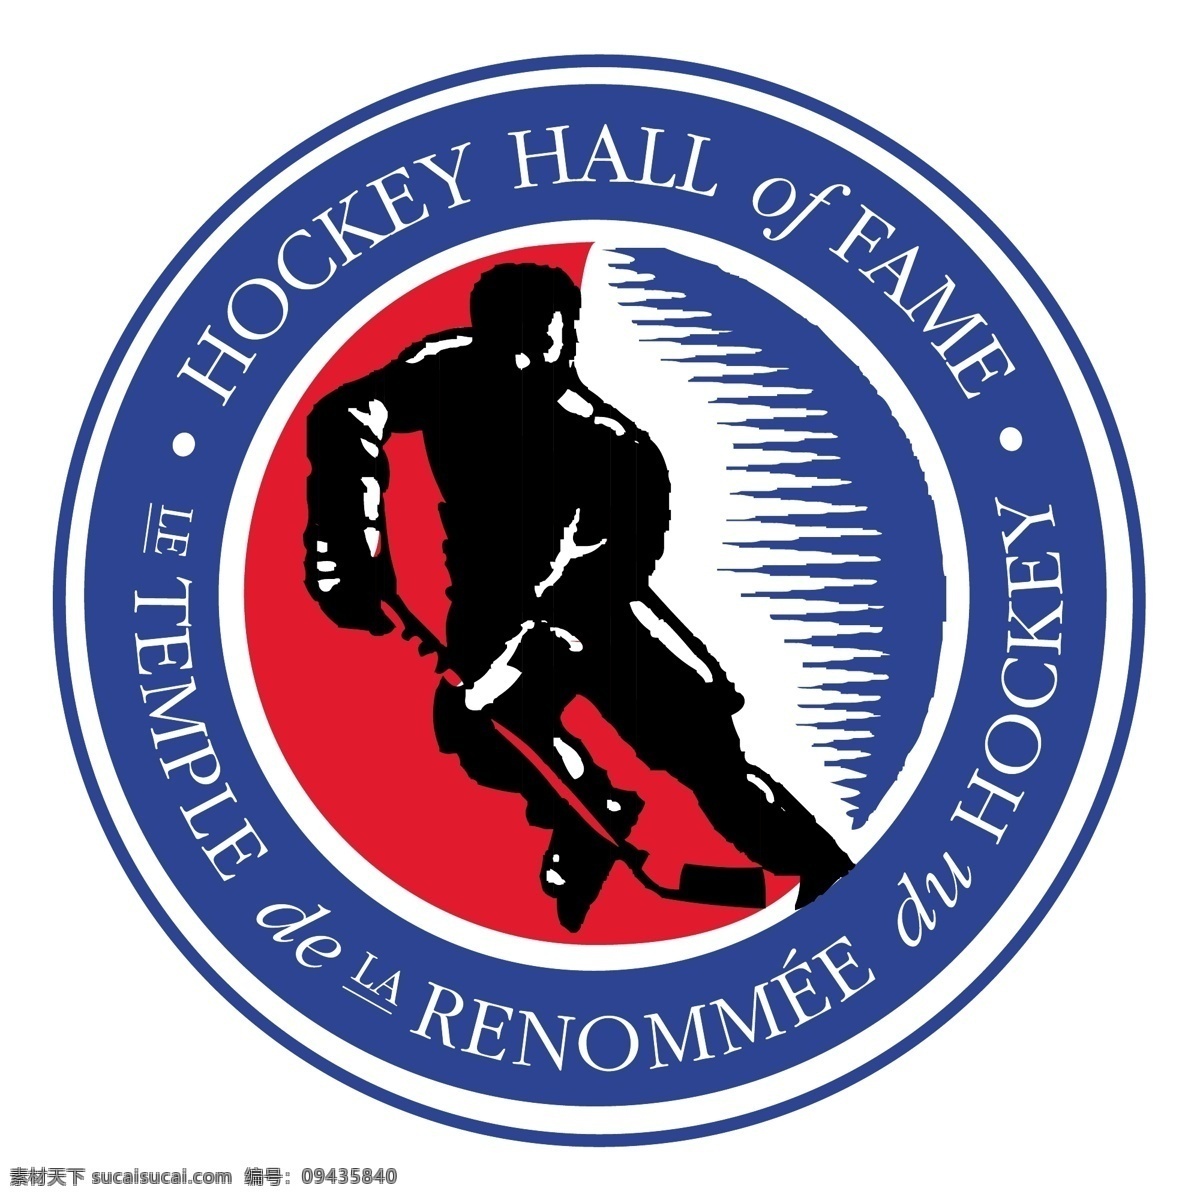 冰球 名人堂 堂 无 标志 曲棍球 大厅 免费 psd源文件 logo设计